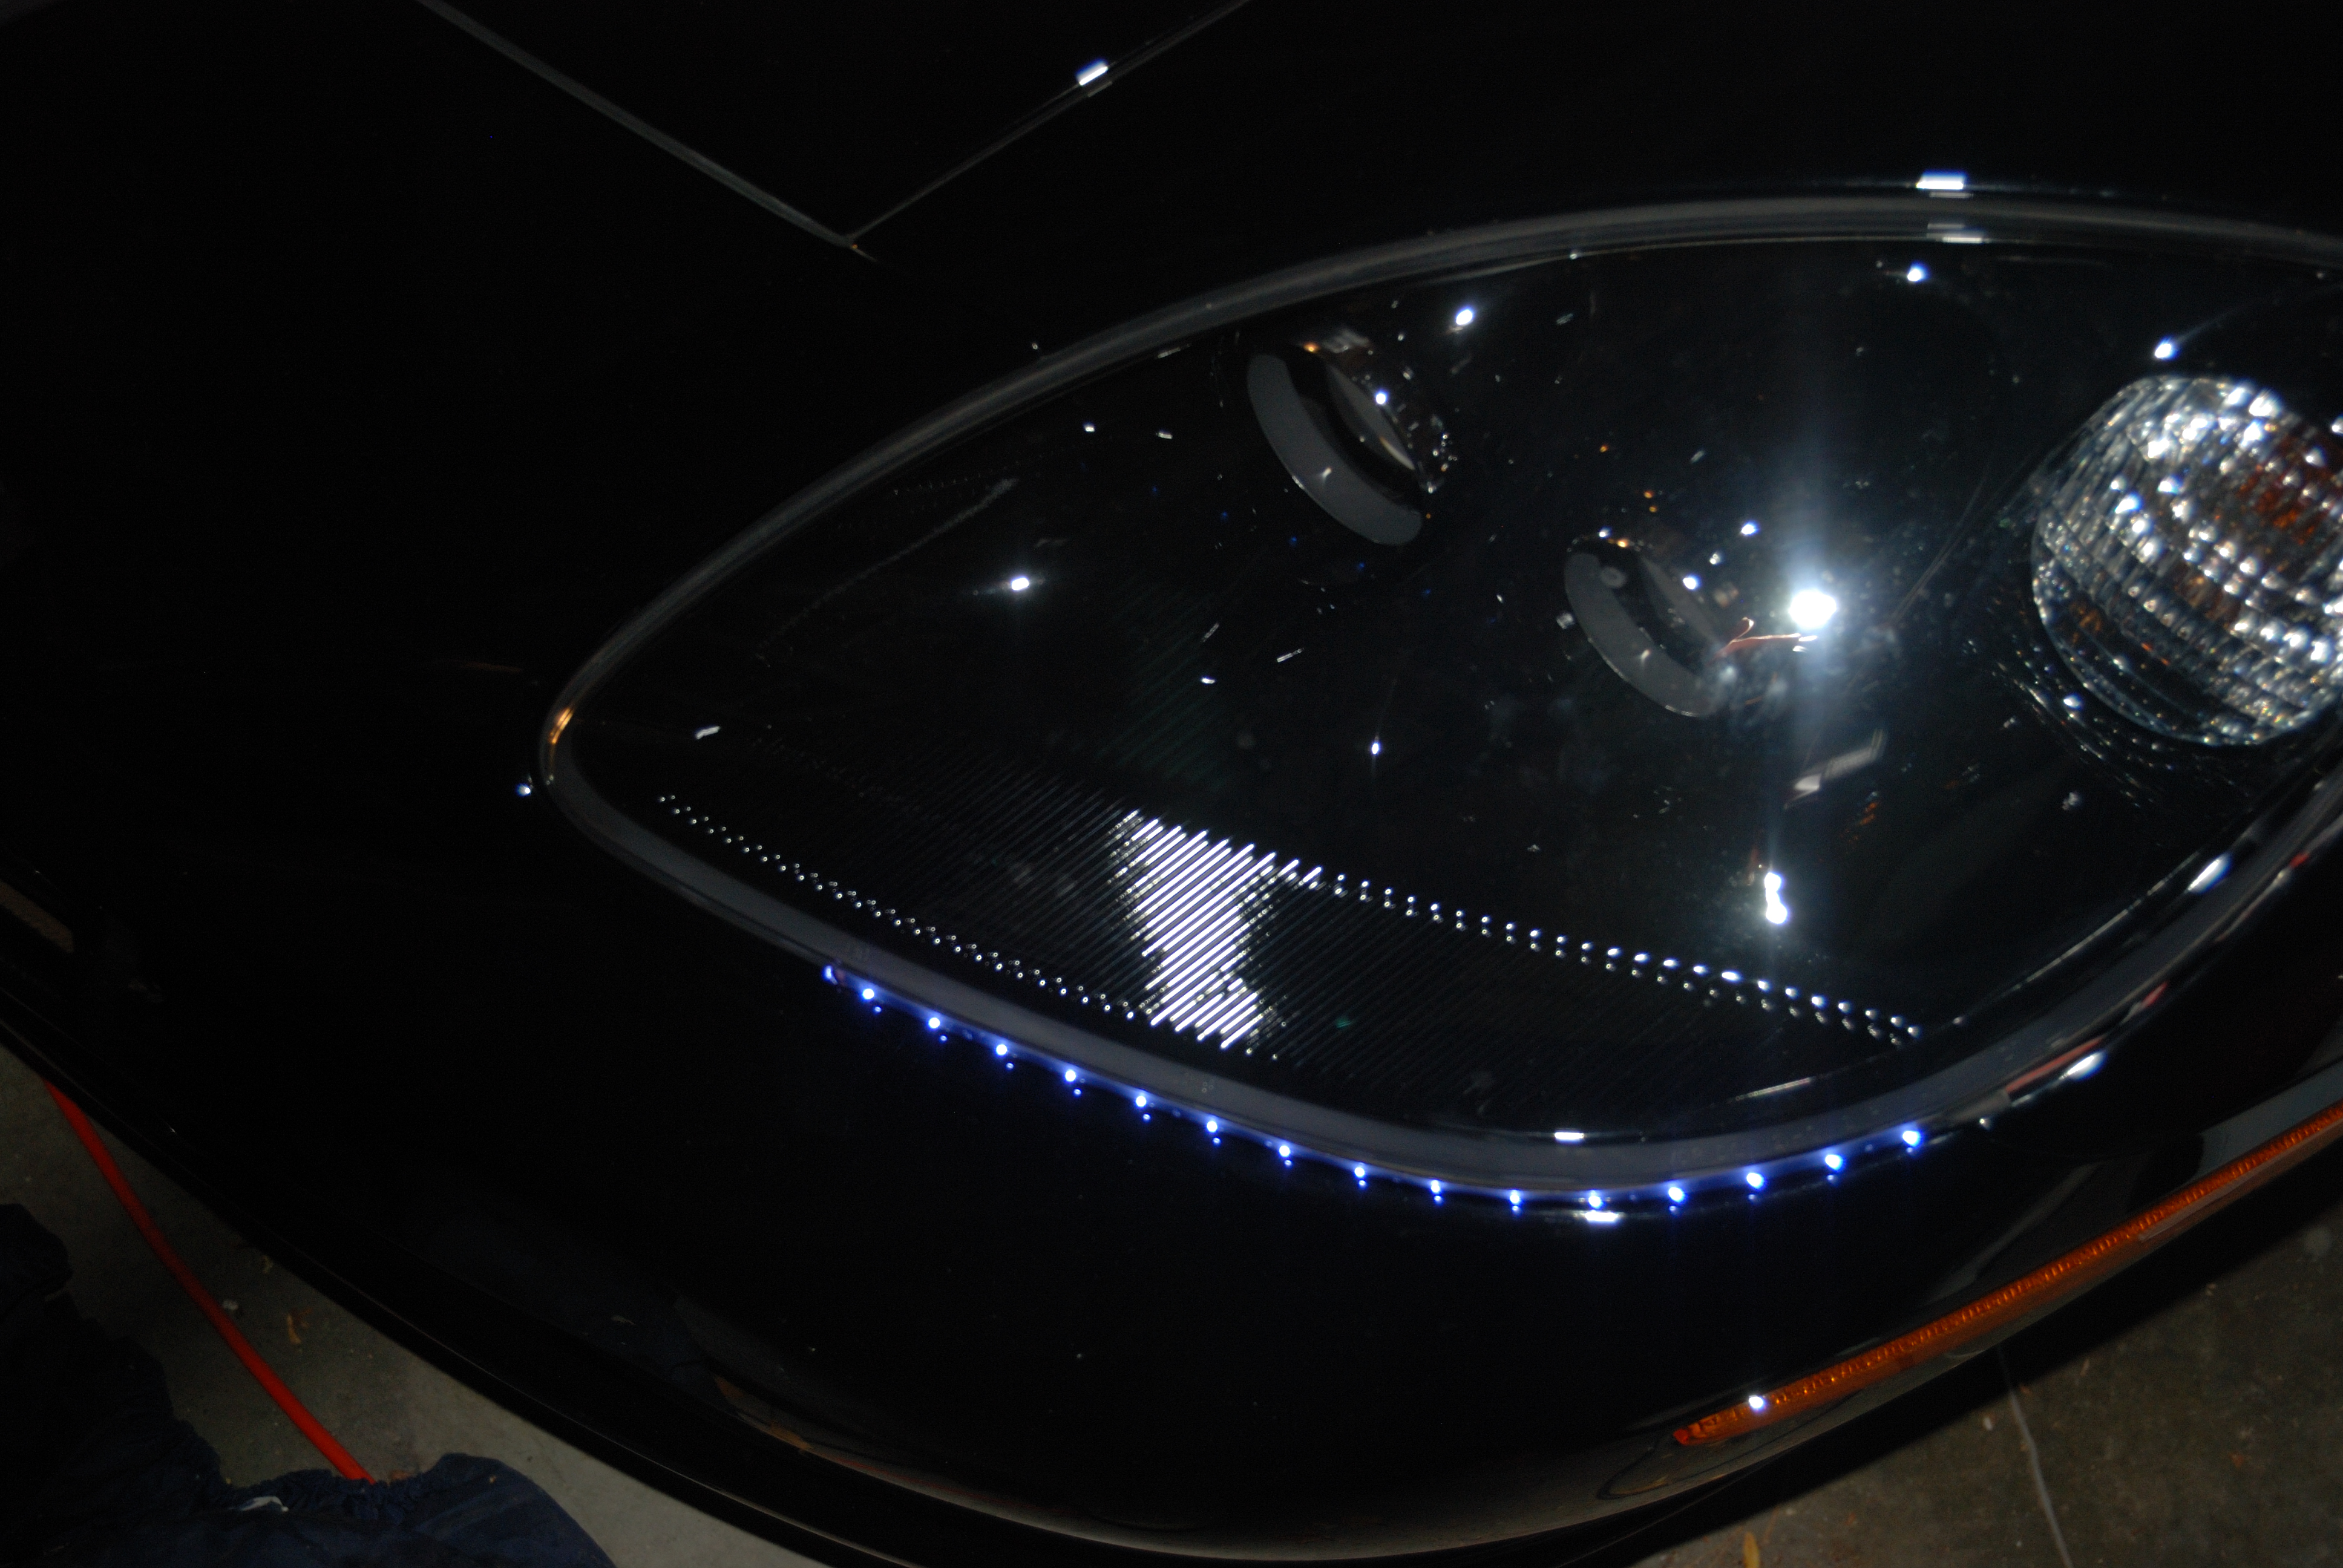 Audi Style LED Headlight Lighting Strips for C6 Corvette Lightning Eyes